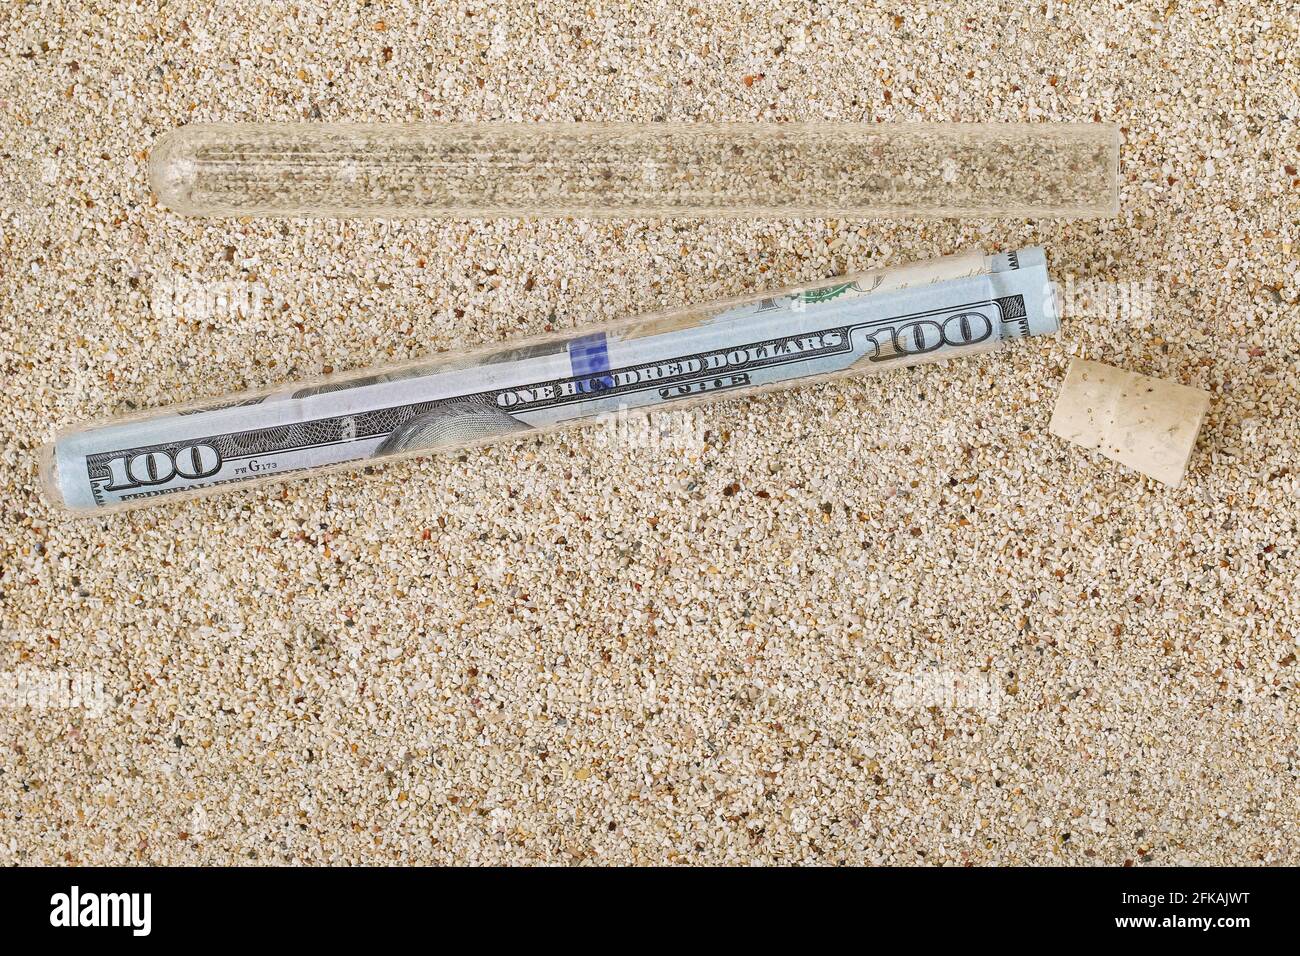 Un rouleau ou nouveau billet de 100 dollars américains à l'intérieur d'un Tube avec couvercle en liège retiré sur une plage de sable message dans un style bouteille Banque D'Images